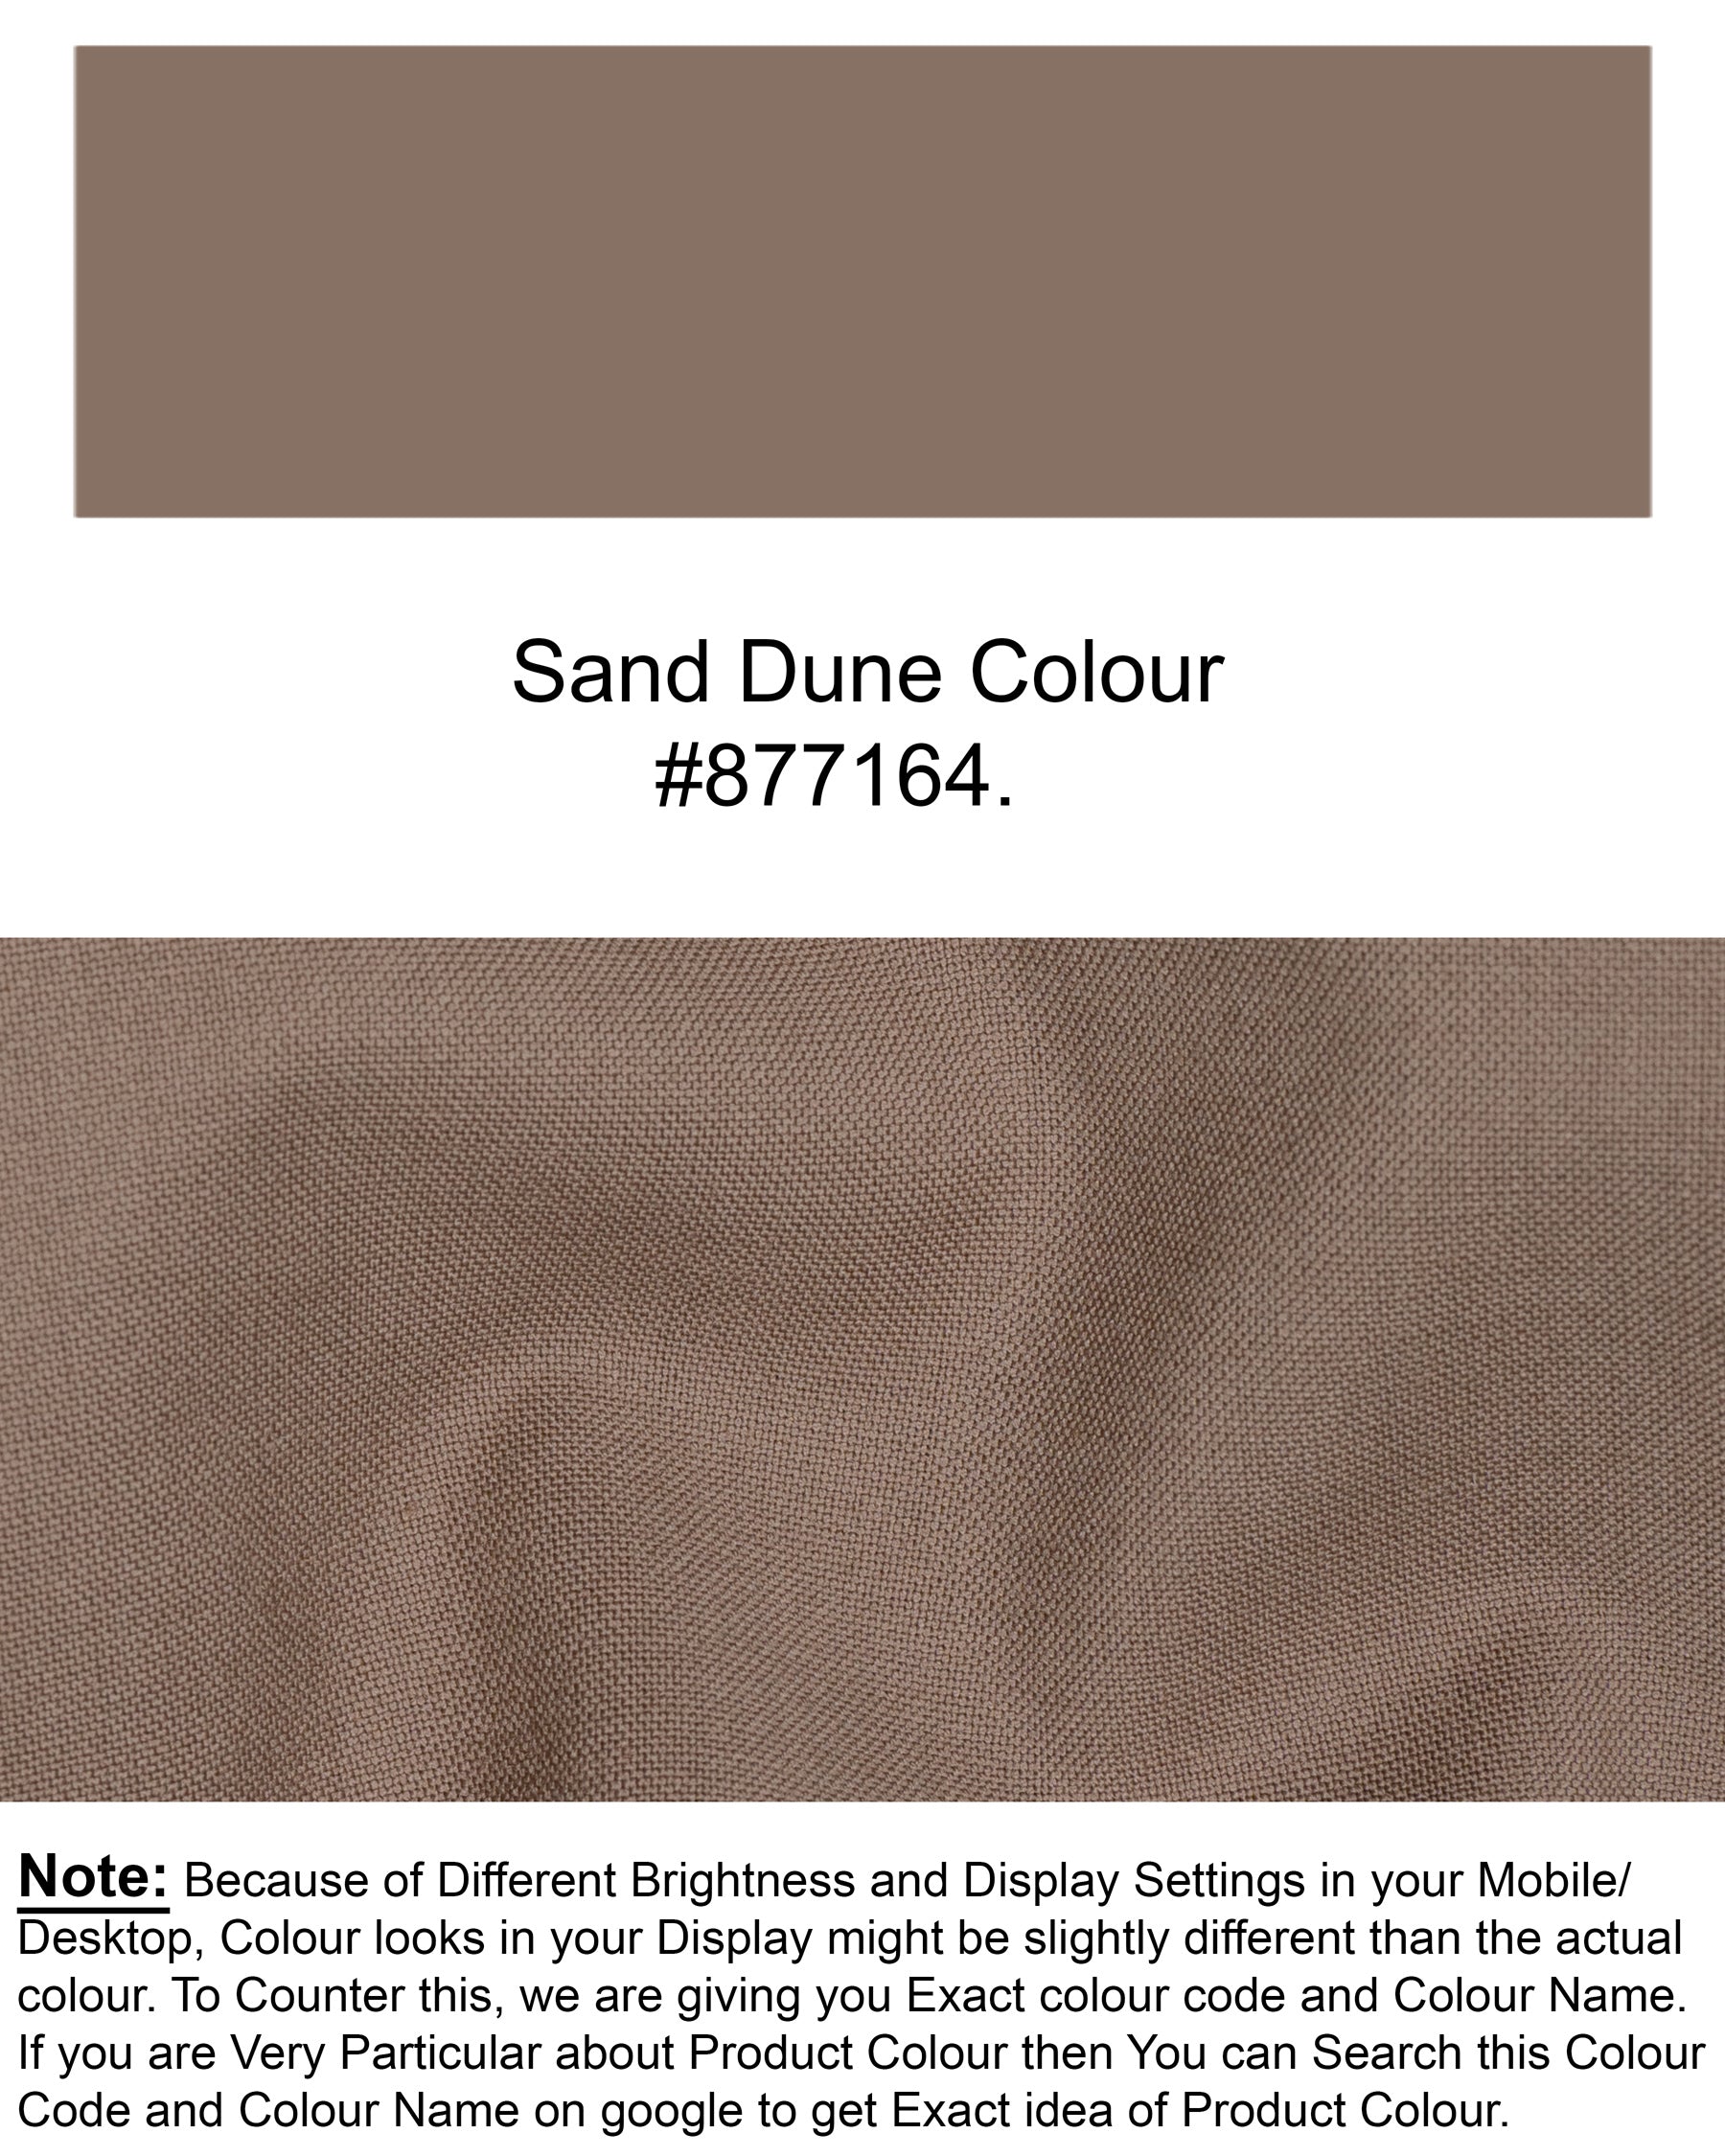 Sand Dune Brown Wool Rich Suit ST1412-SB-36, ST1412-SB-38, ST1412-SB-40, ST1412-SB-42, ST1412-SB-44, ST1412-SB-46, ST1412-SB-48, ST1412-SB-50, ST1412-SB-52, ST1412-SB-54, ST1412-SB-56, ST1412-SB-58, ST1412-SB-60